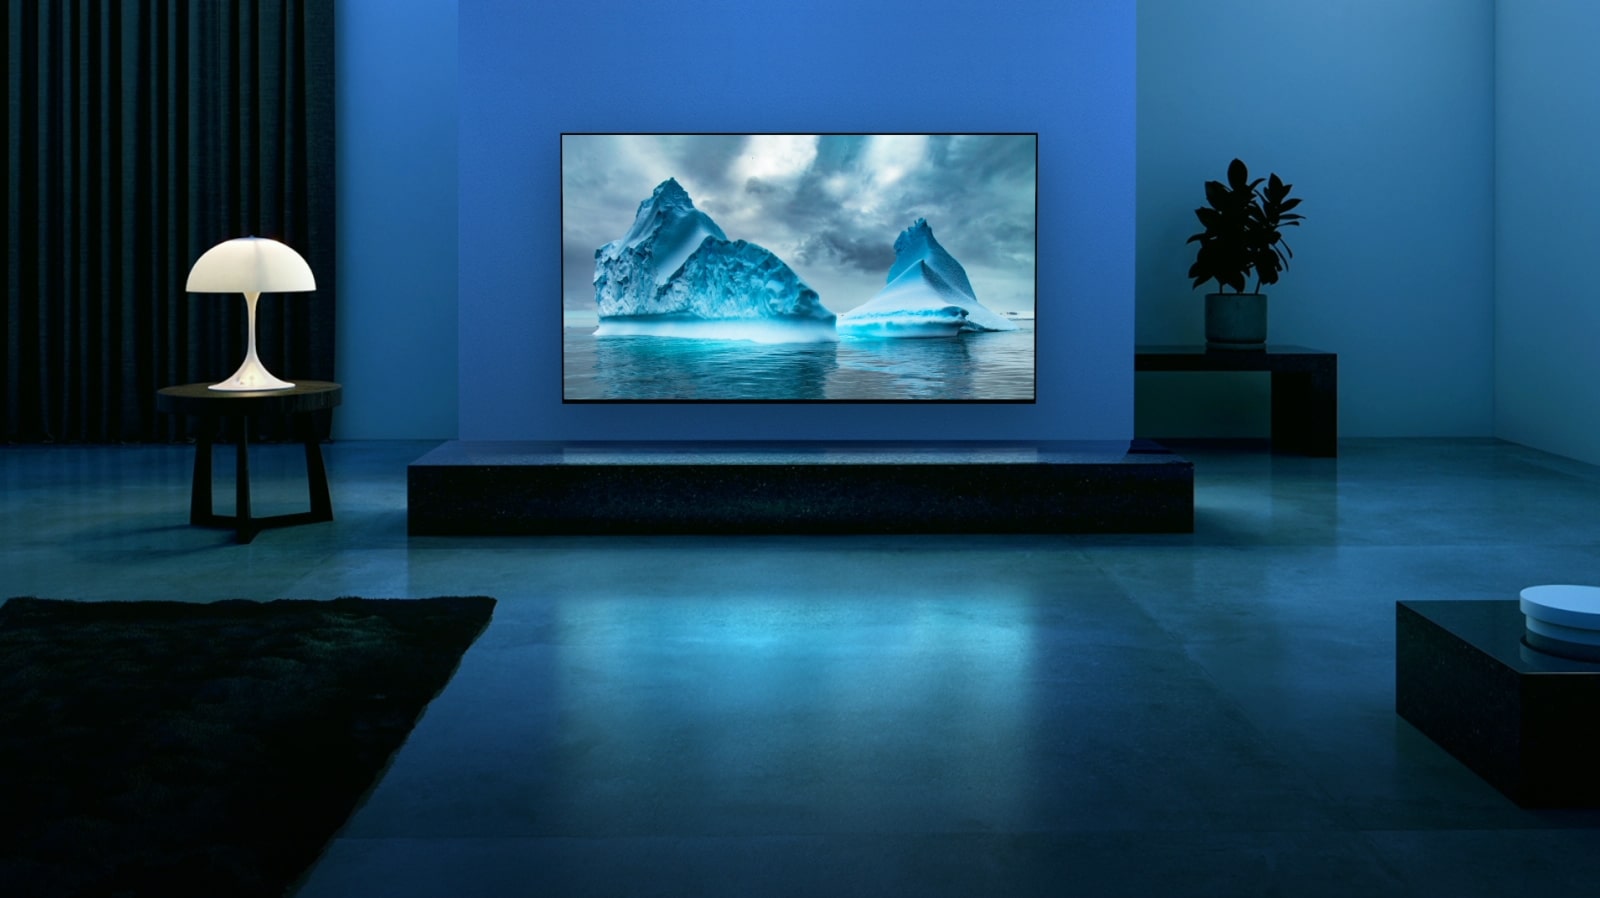 Синий неоновый контур движется по изображению синего ледника. Камера отдаляется и показывает голубой ледник на экране телевизора. Телевизор расположен в просторной гостиной с голубым фоном. 